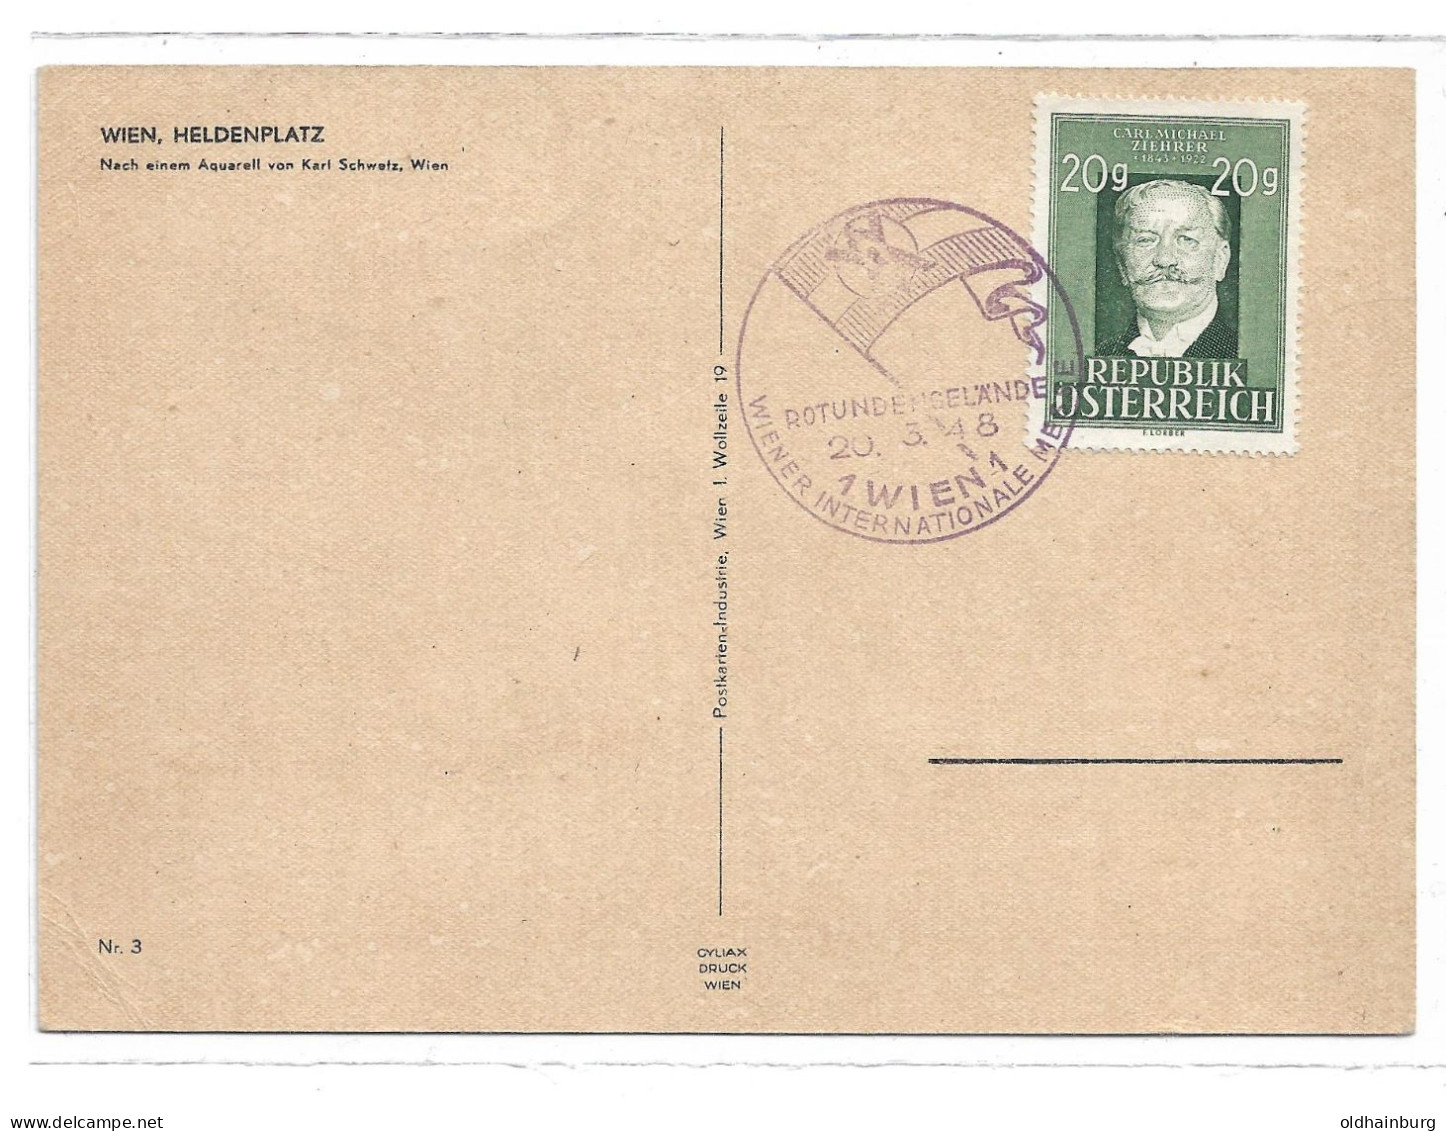 0550h: Wien 1948, Heldenplatz, Rs. Sonderstempel "Rotundengelände" Und Marke Carl Michael Ziehrer - Ringstrasse